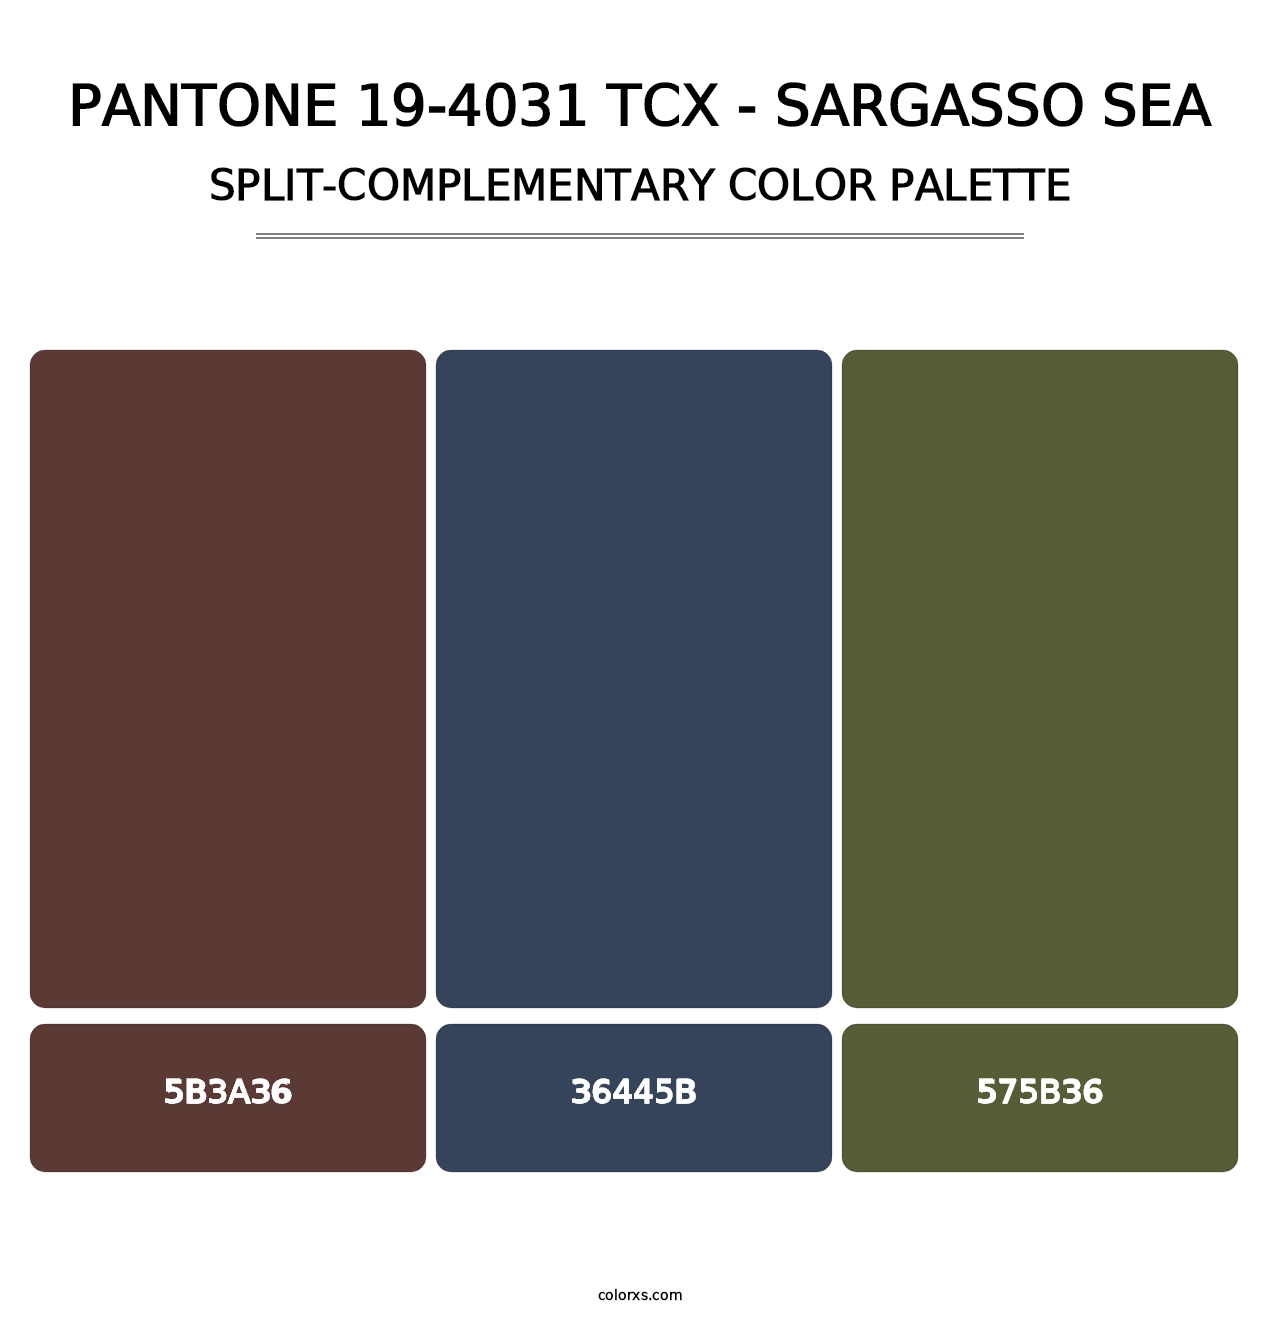 PANTONE 19-4031 TCX - Sargasso Sea - Split-Complementary Color Palette